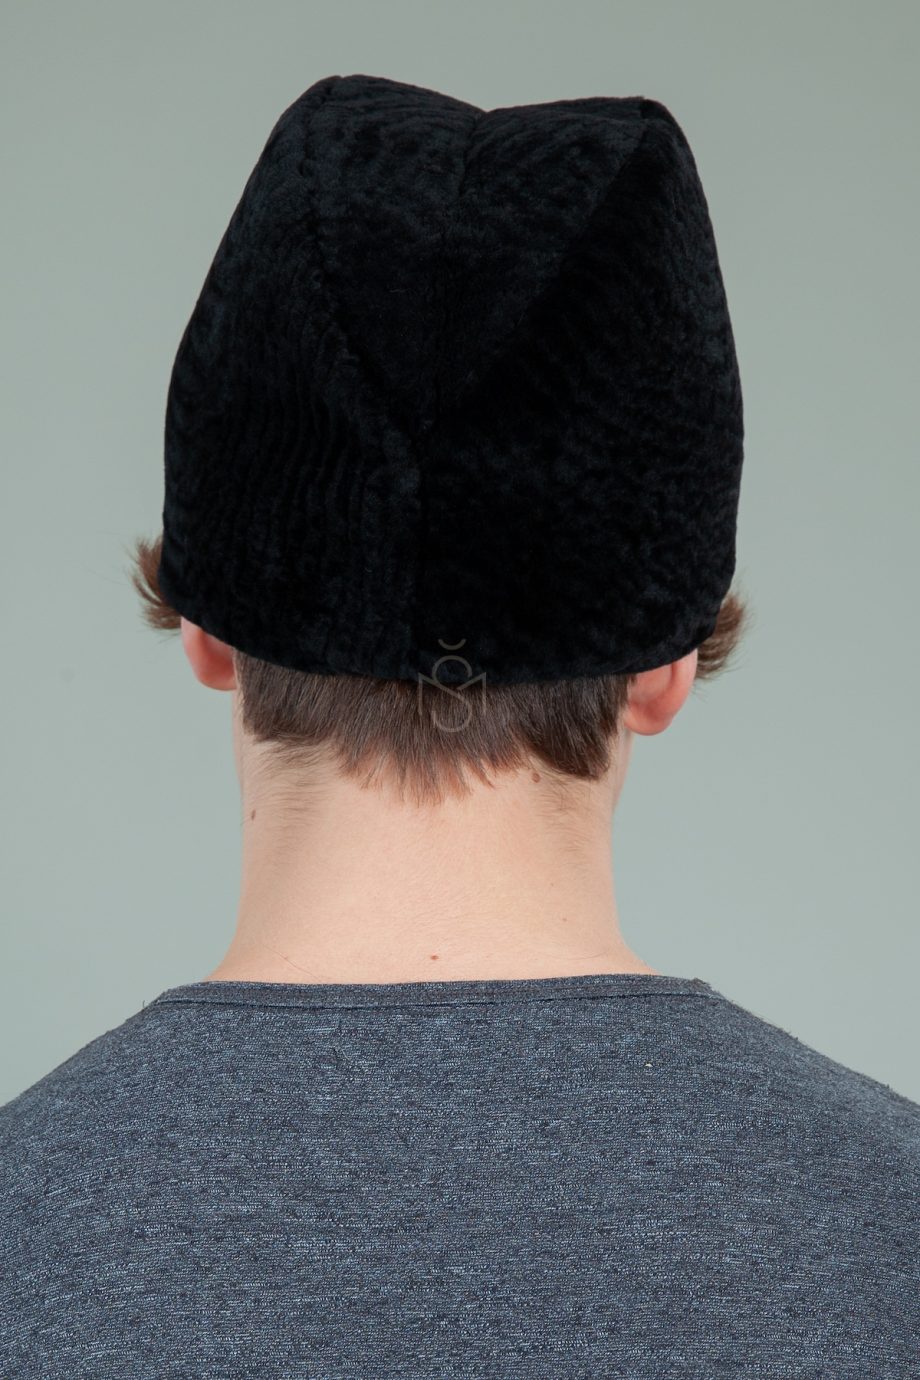 juodo avikailio kepure su atvartu ausims